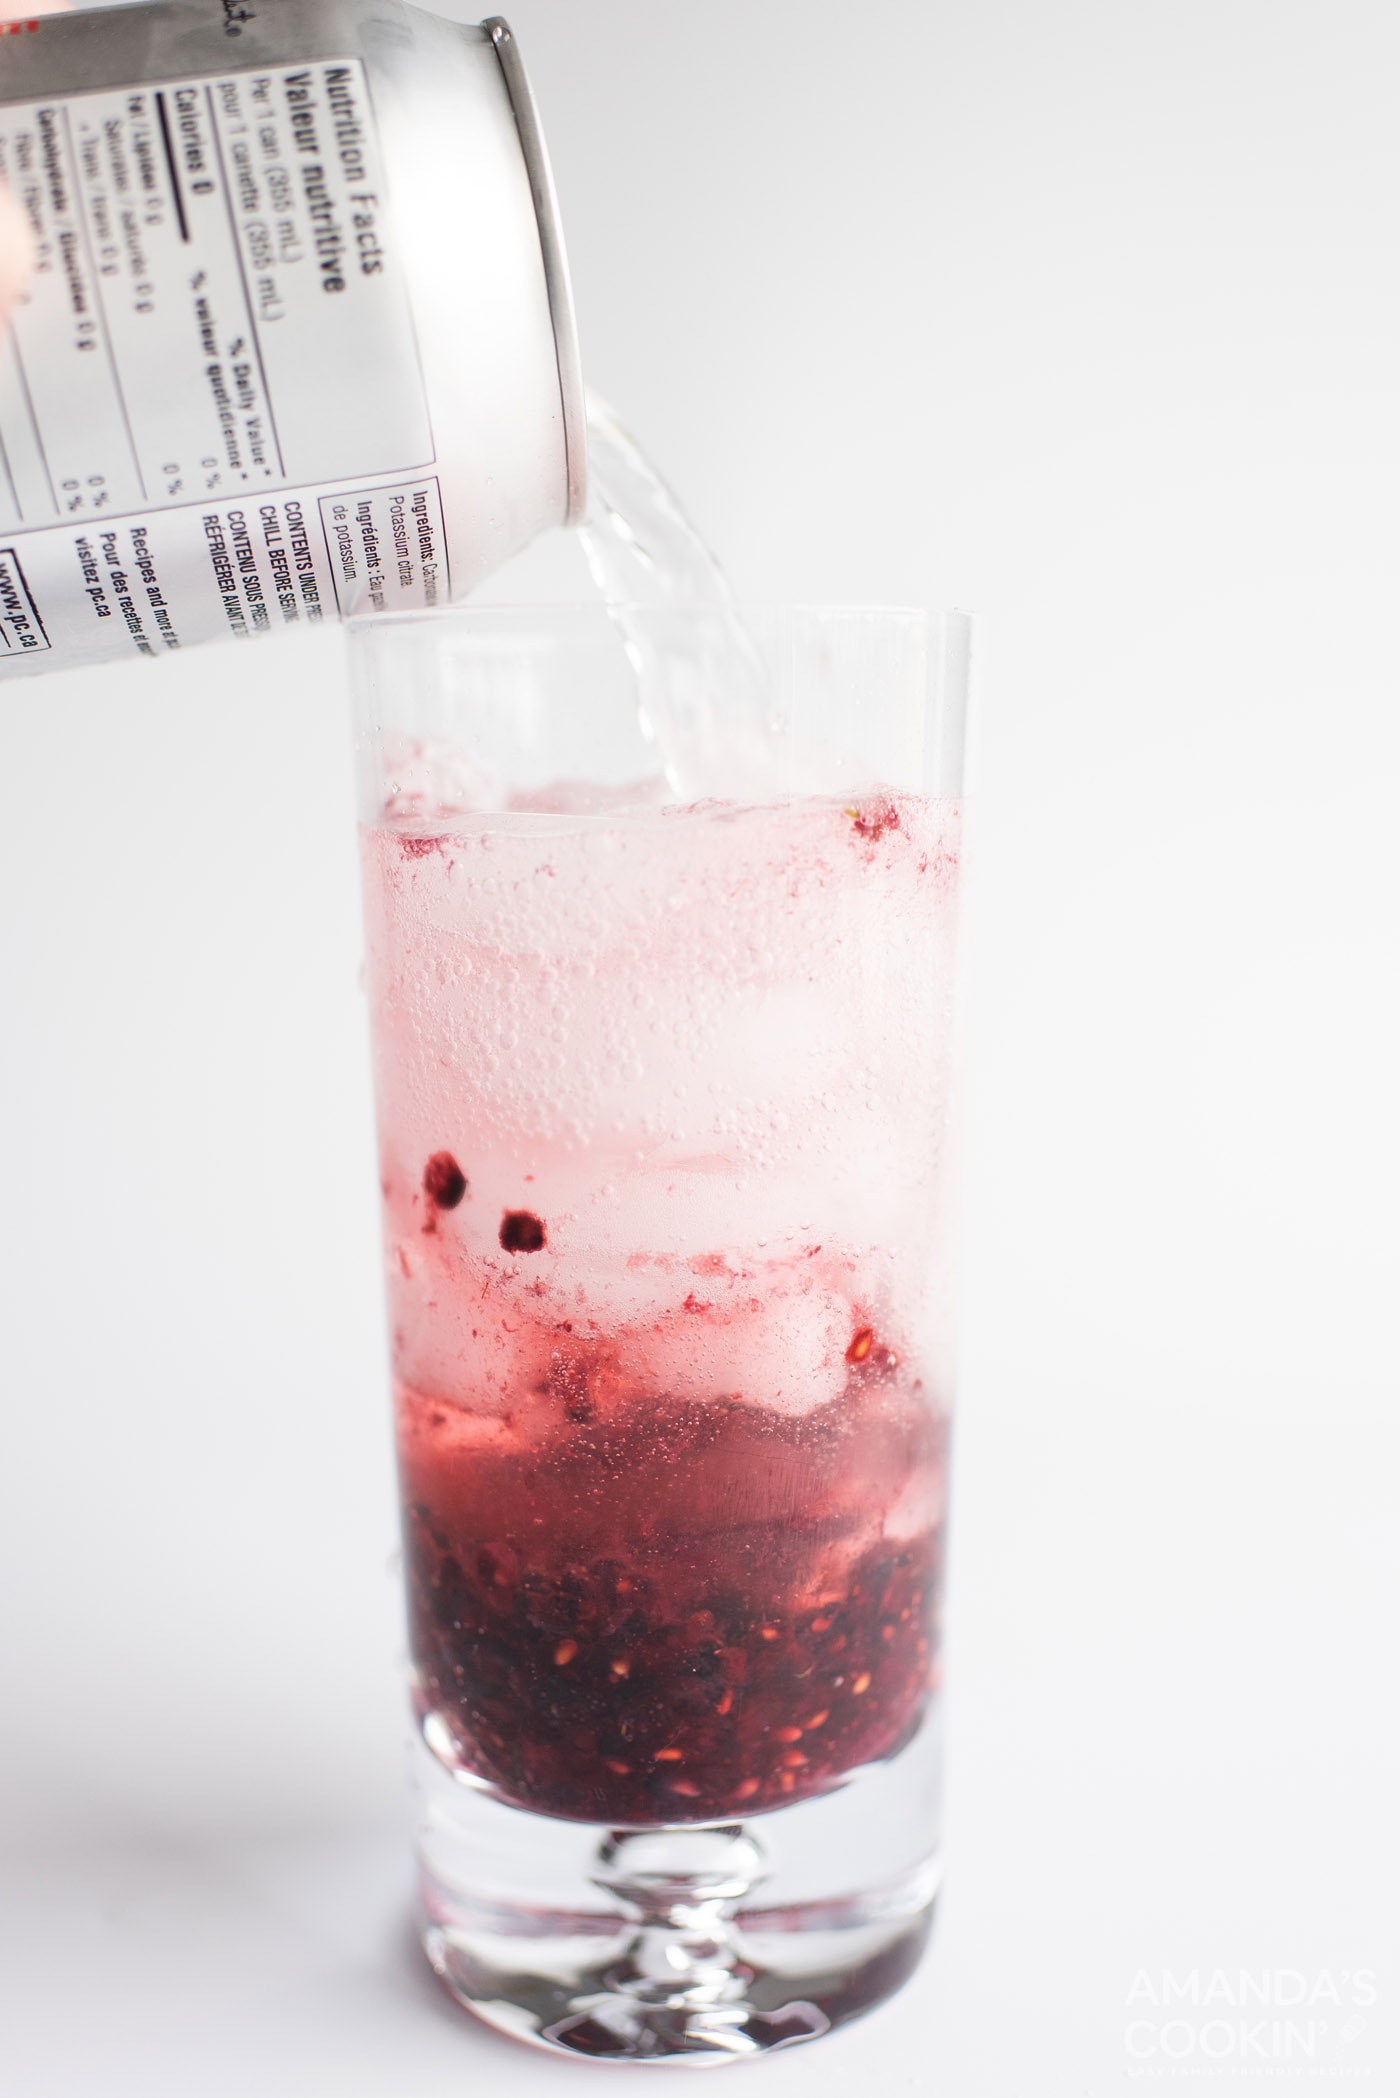 pouring club soda into a glass of blackberry mojito